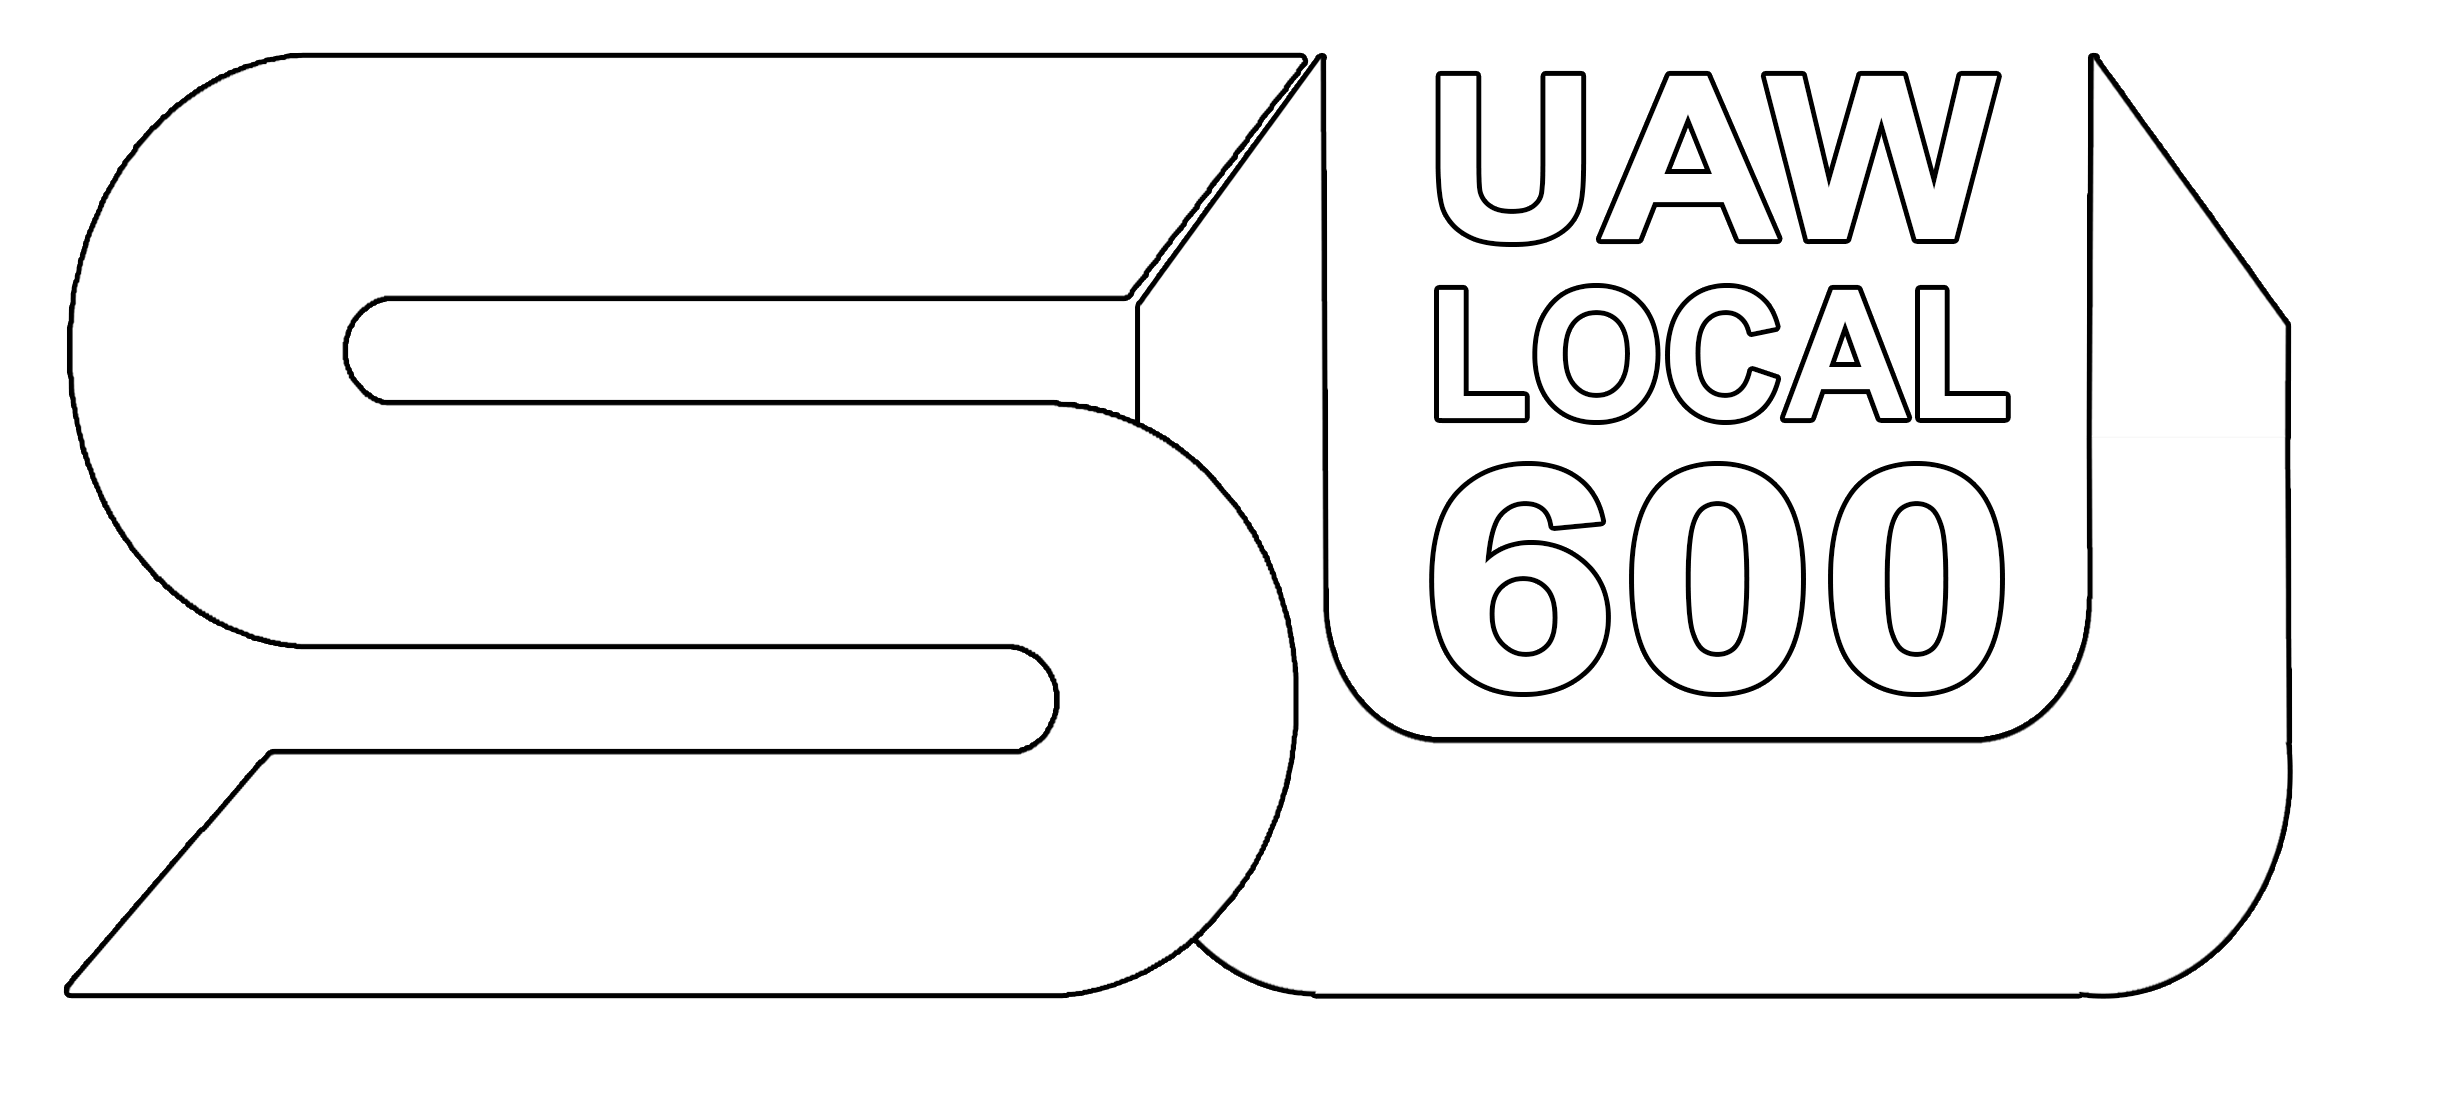 Local 600 UAW Logo - Local 600 Steel Unit